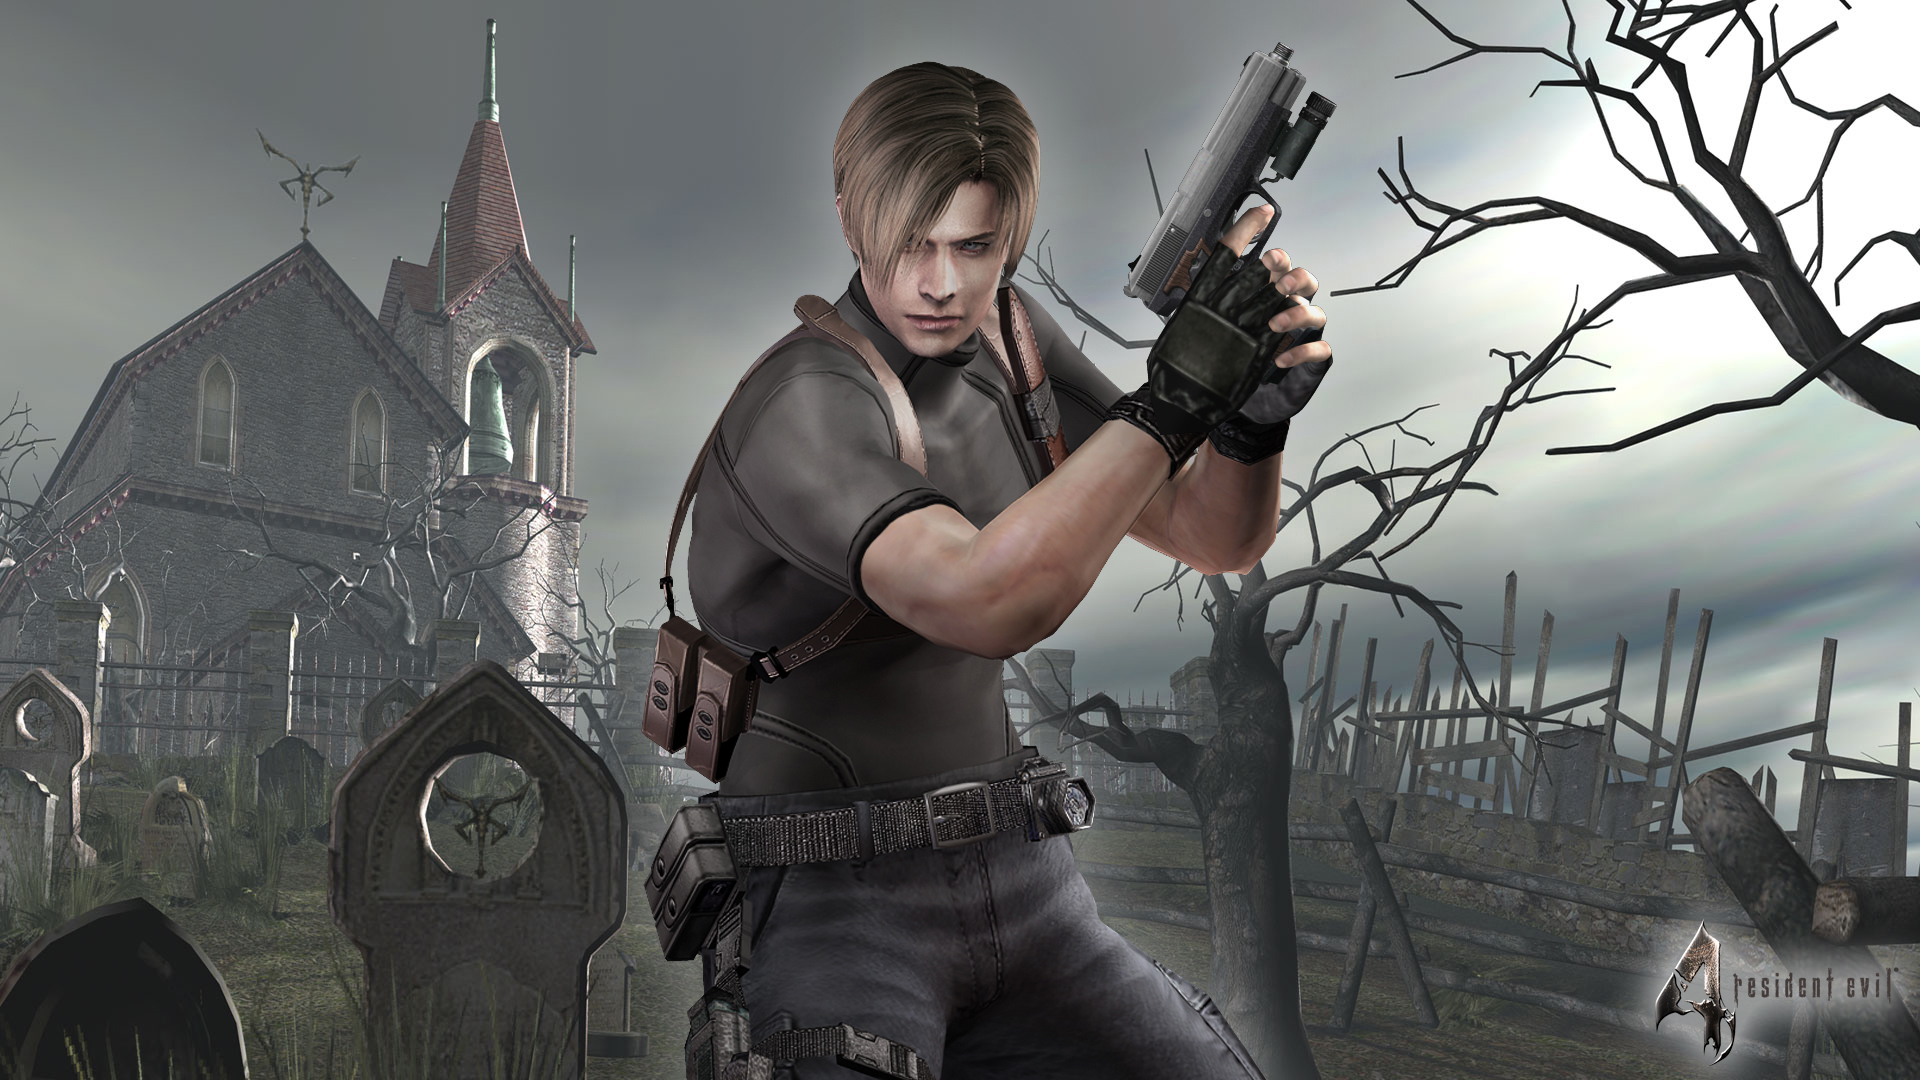 Resident Evil 4 Xbox One Usado